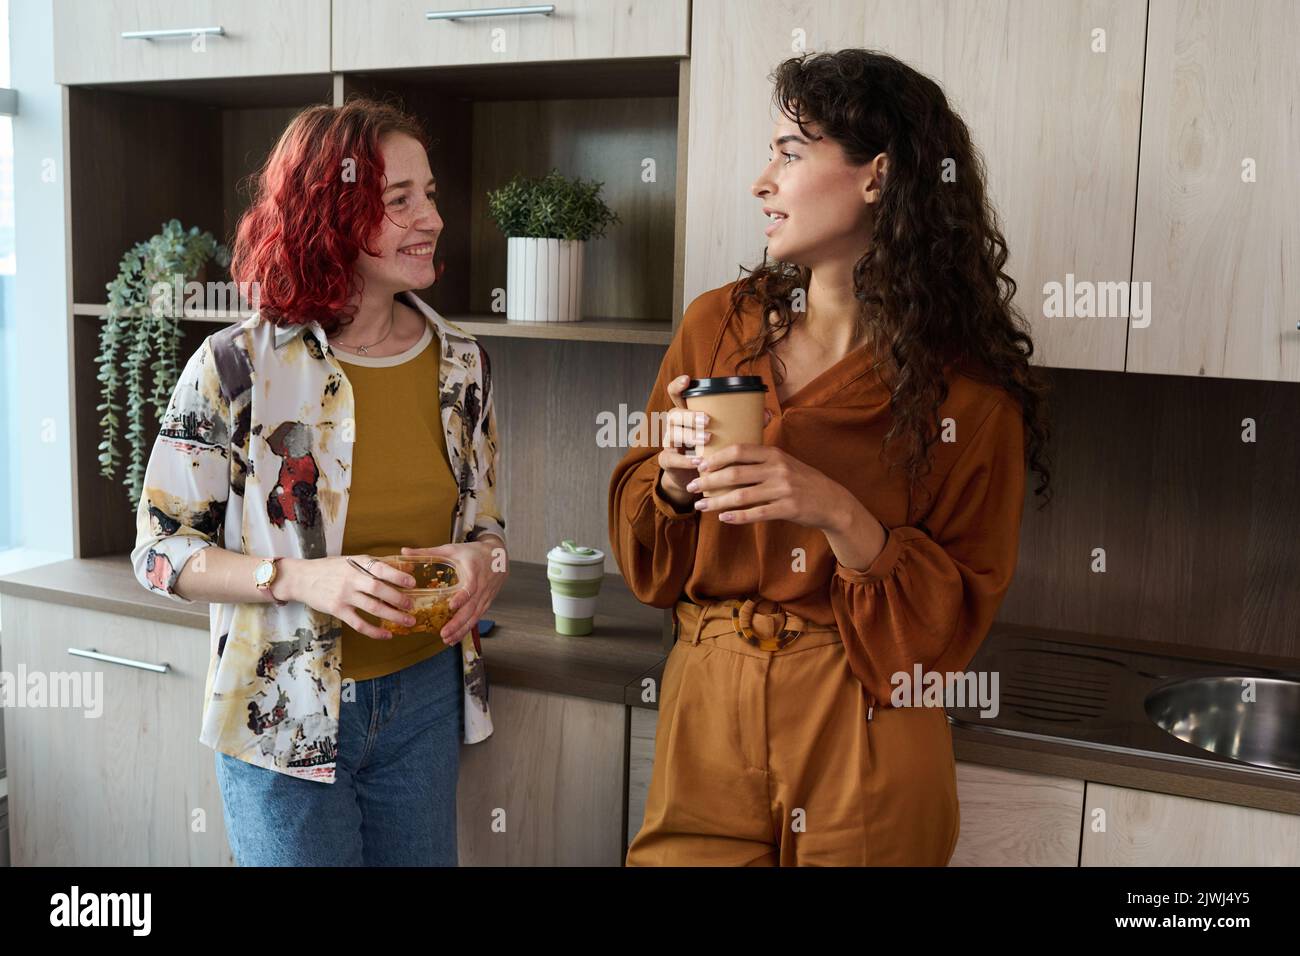 Zwei junge, elegante weibliche Angestellte in eleganter Casualwear, die Kaffee und Mittagessen trinken, während sie in der Küche stehen und in der Pause plaudern Stockfoto